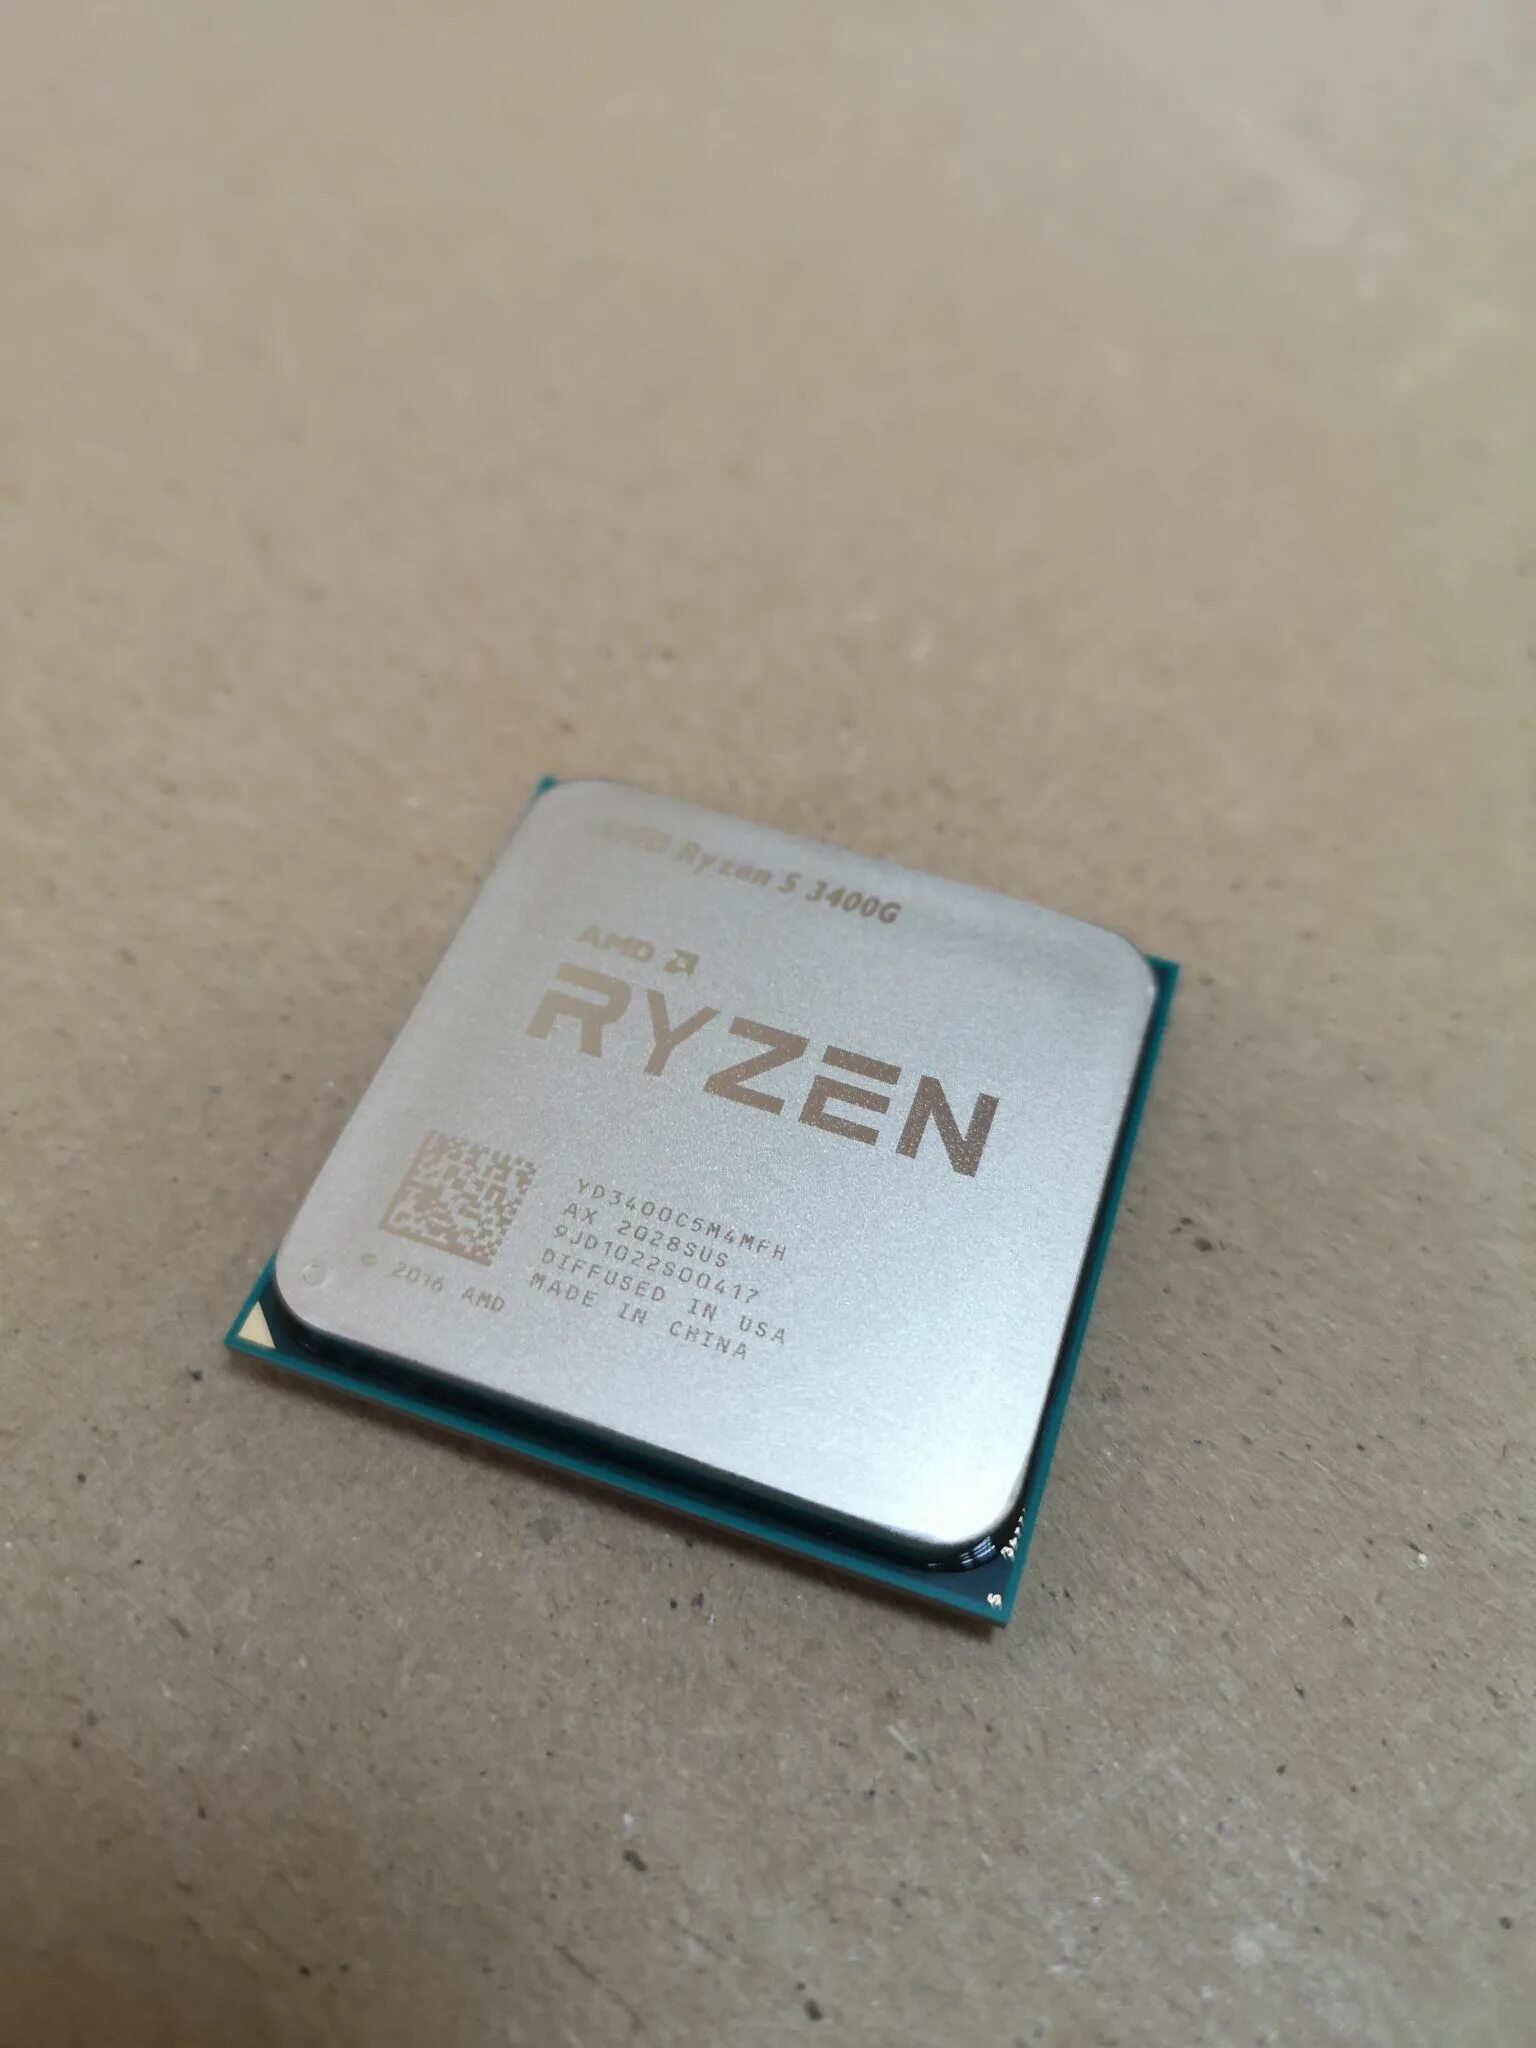 Rayzen 5 3400g. R5 3400g. АМД райзен 5 3400g. Процессор AMD Ryzen 5 3400g am4, 4 x 3700 МГЦ.